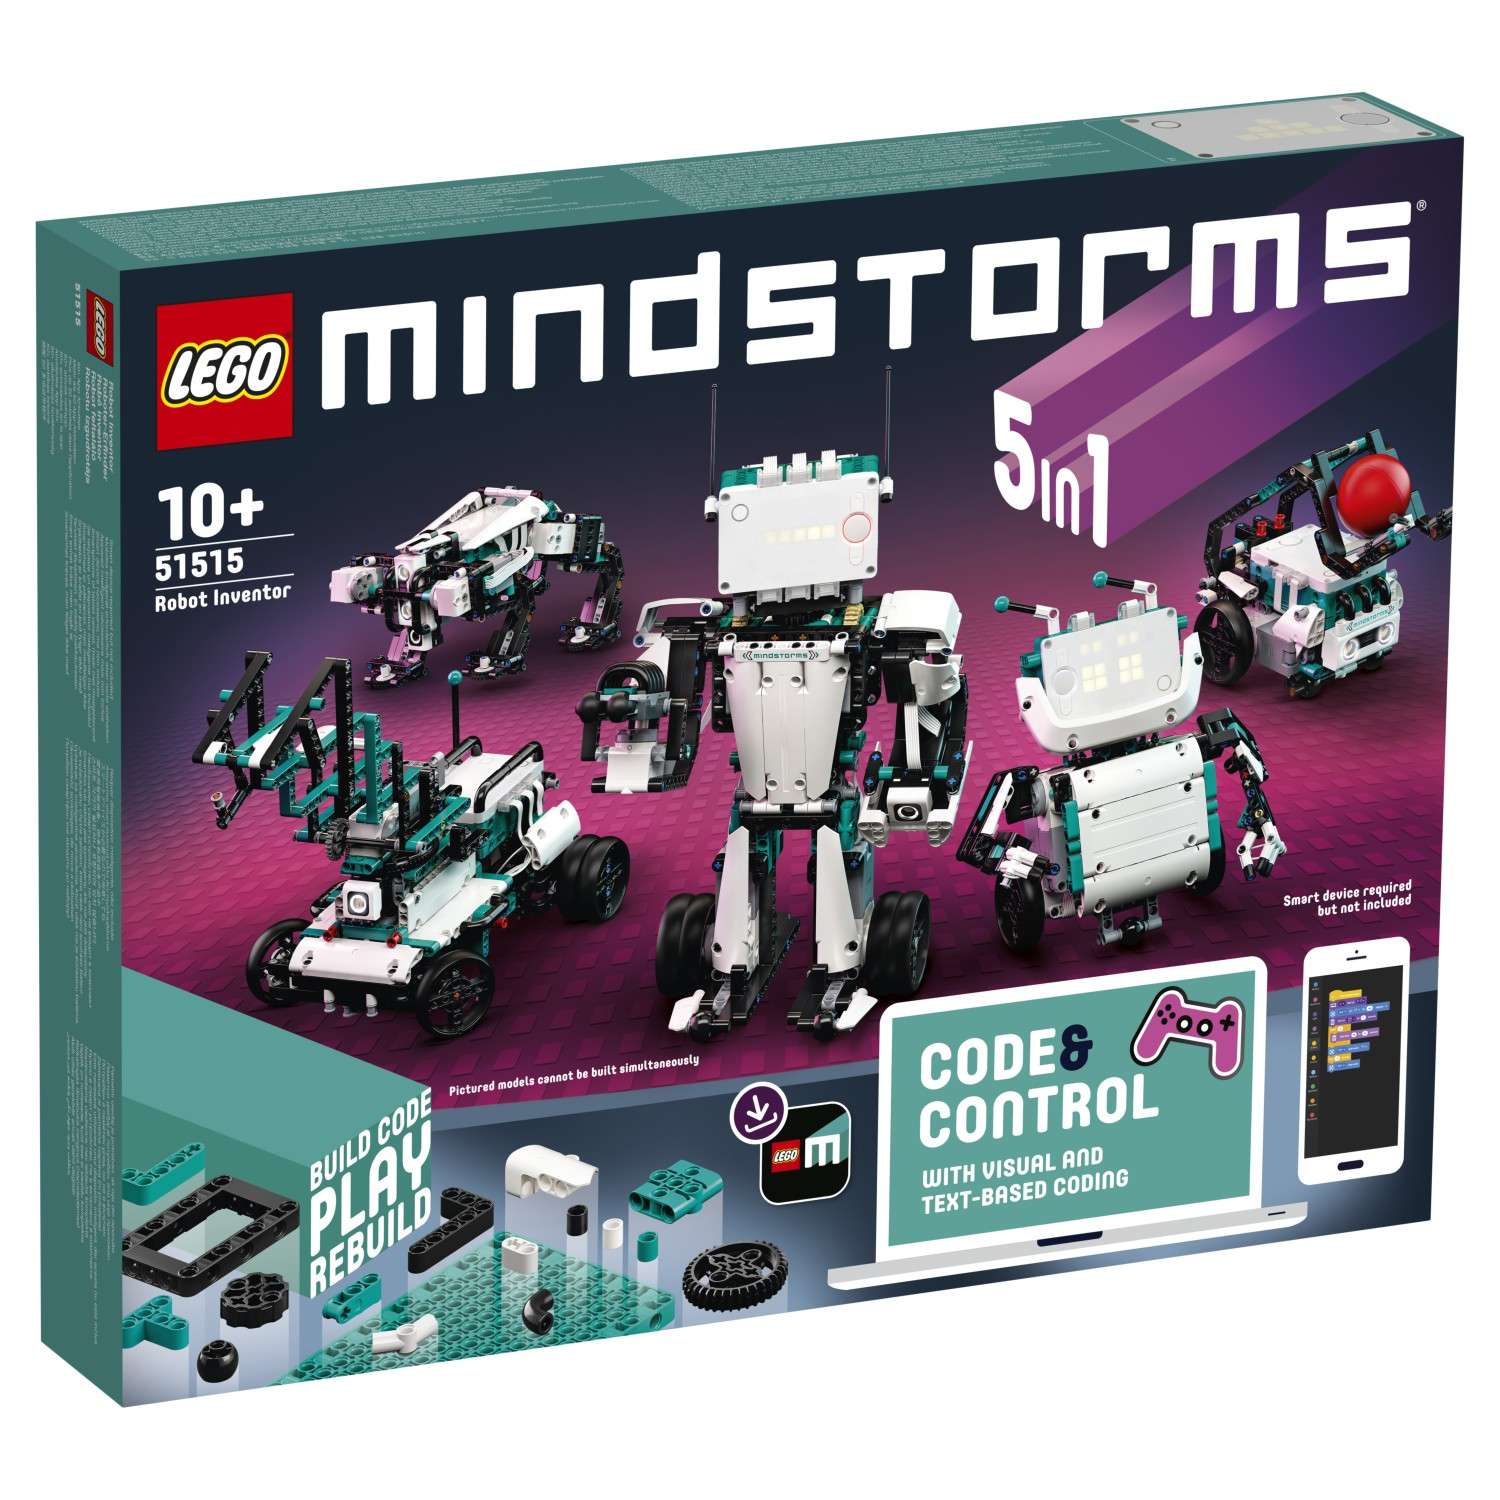 LEGO MINDSTORMS EV3 Робот-изобретатель 51515 - фото 2